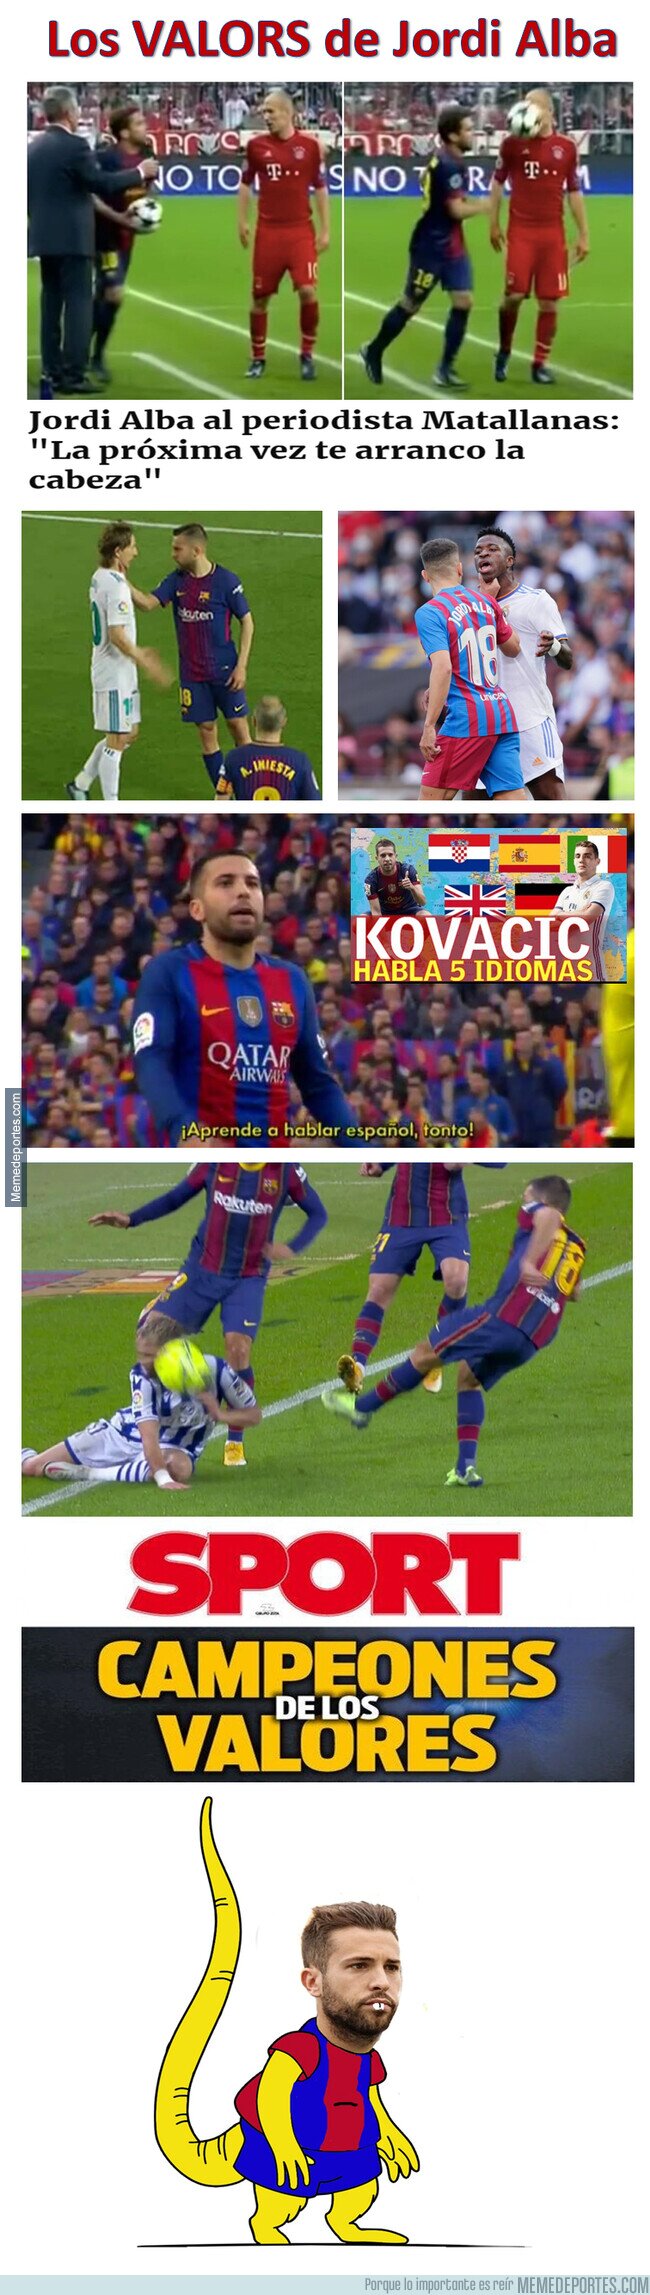 1151640 - En el Barça tienen VALORES... equivocados